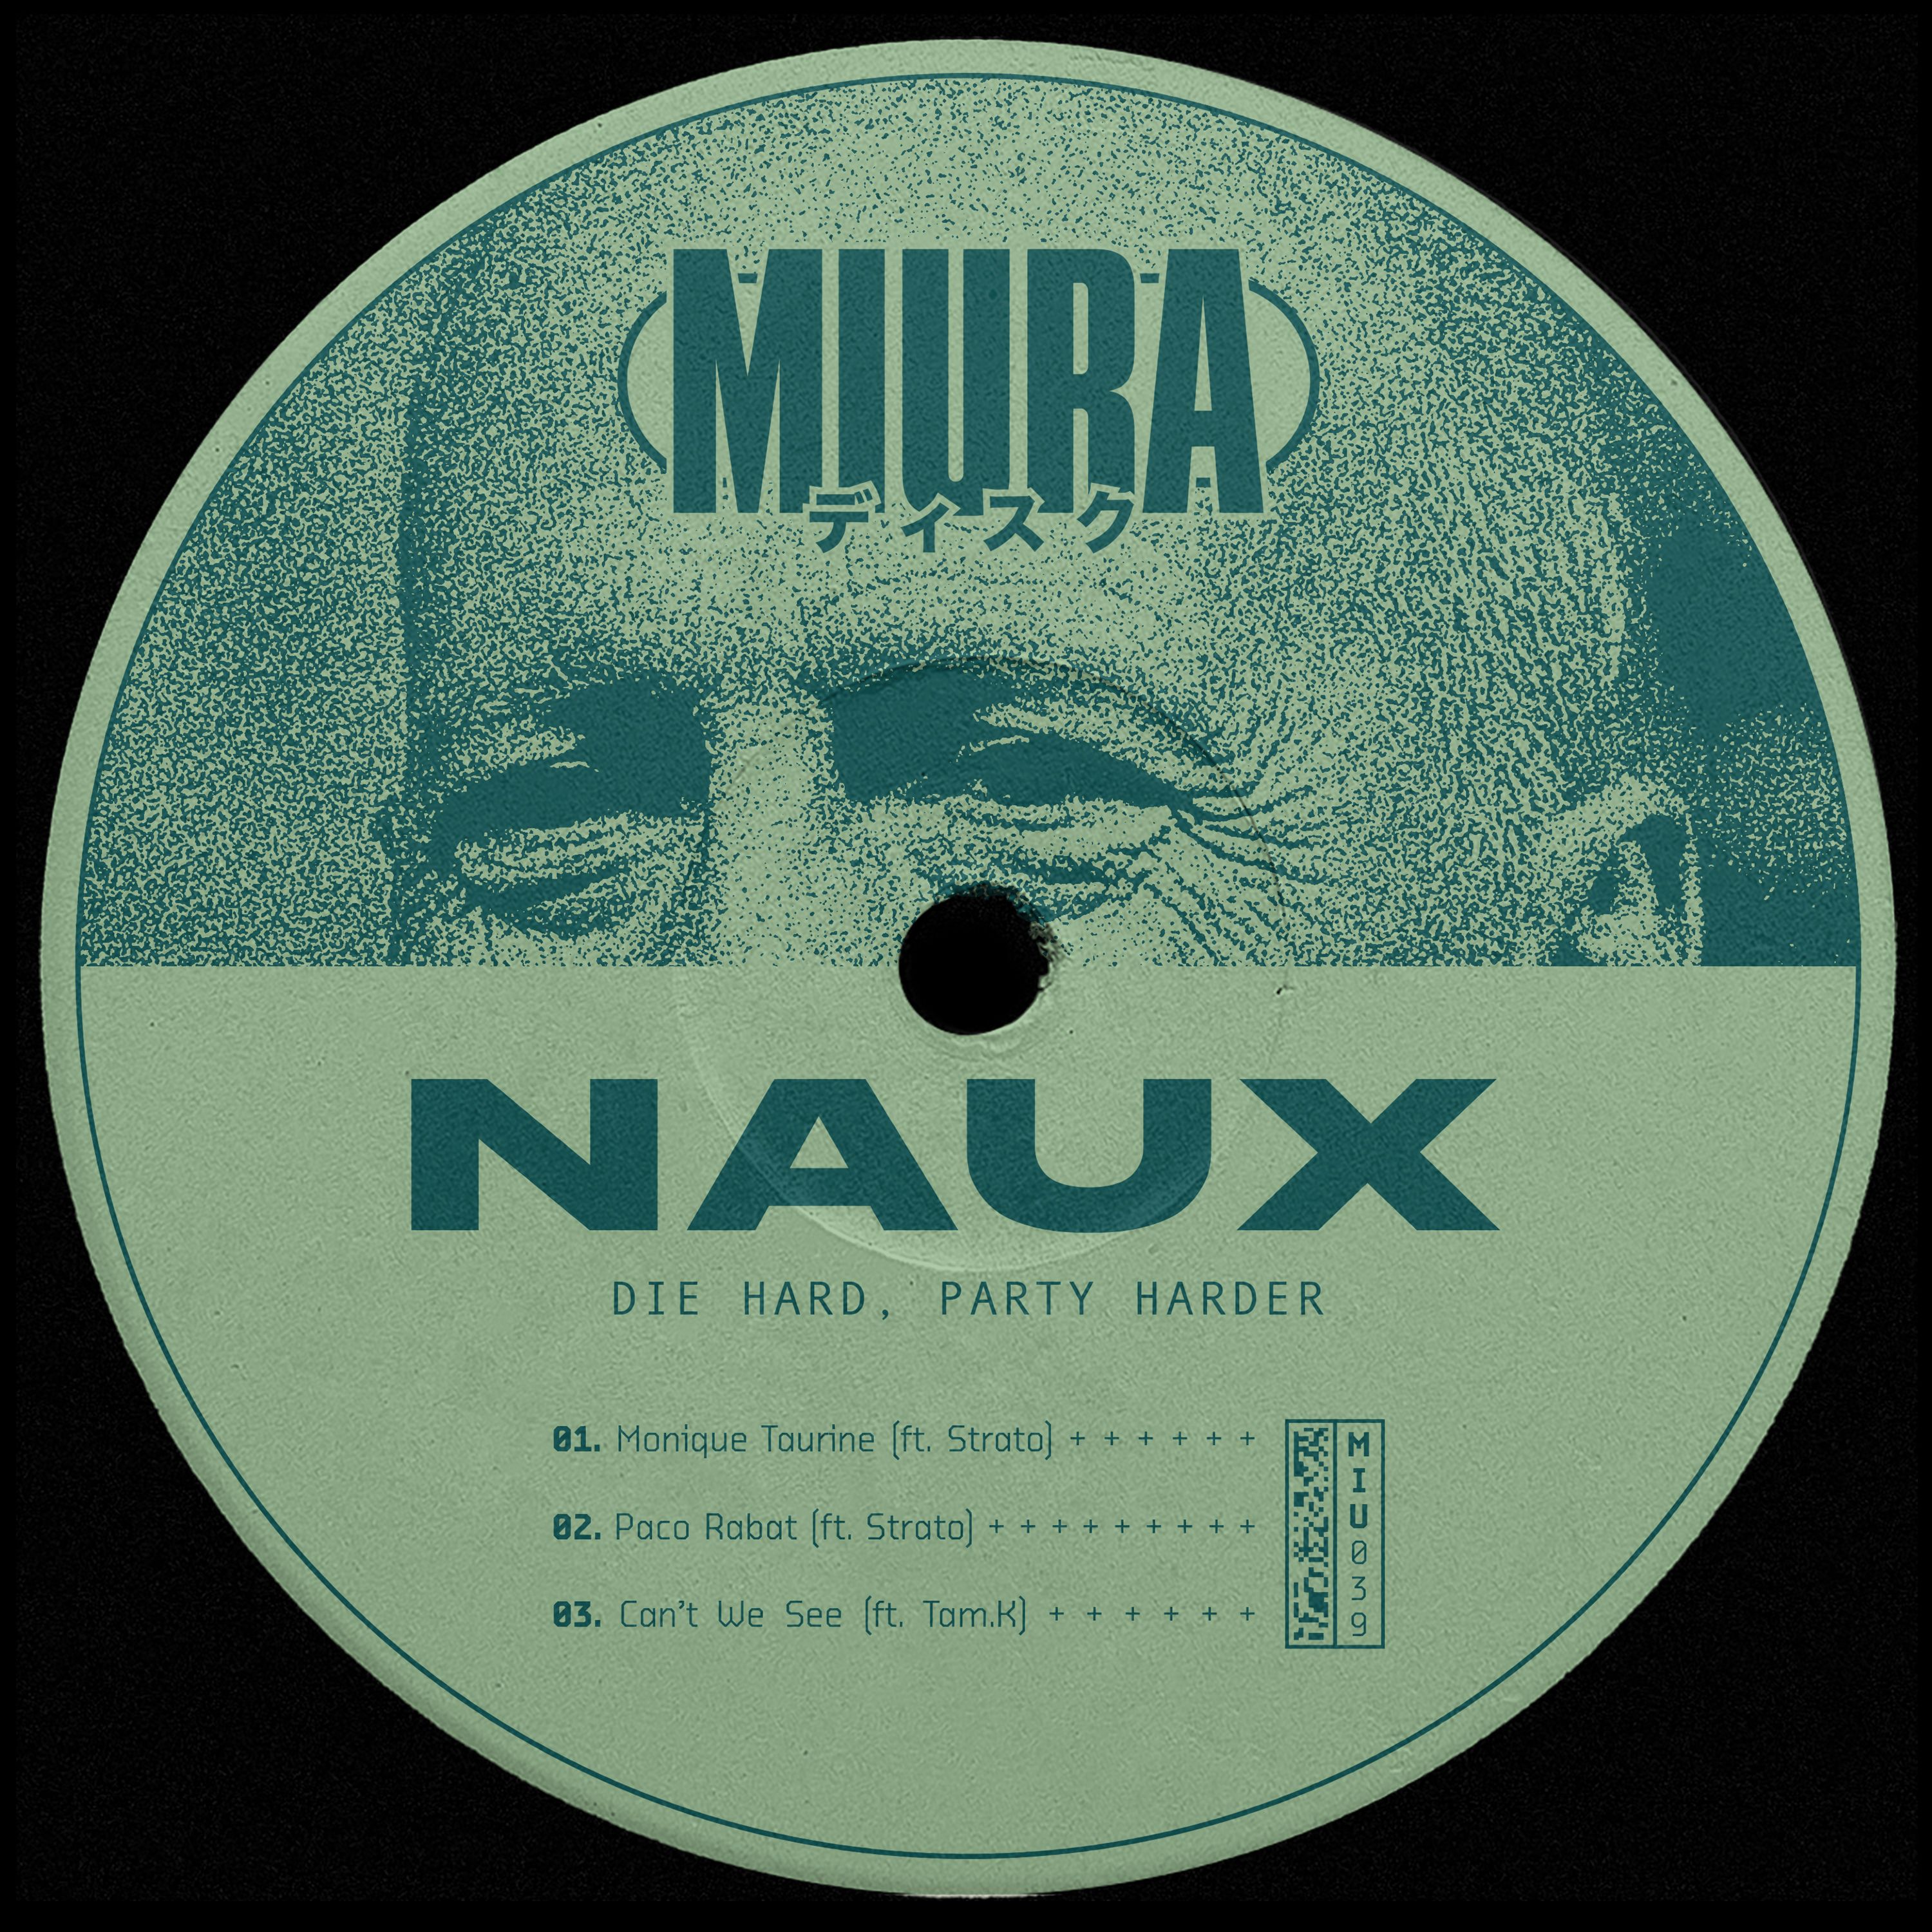 Soo dejiso PREMIERE: Naux & Strato - Monique Taurine [Miura Records]